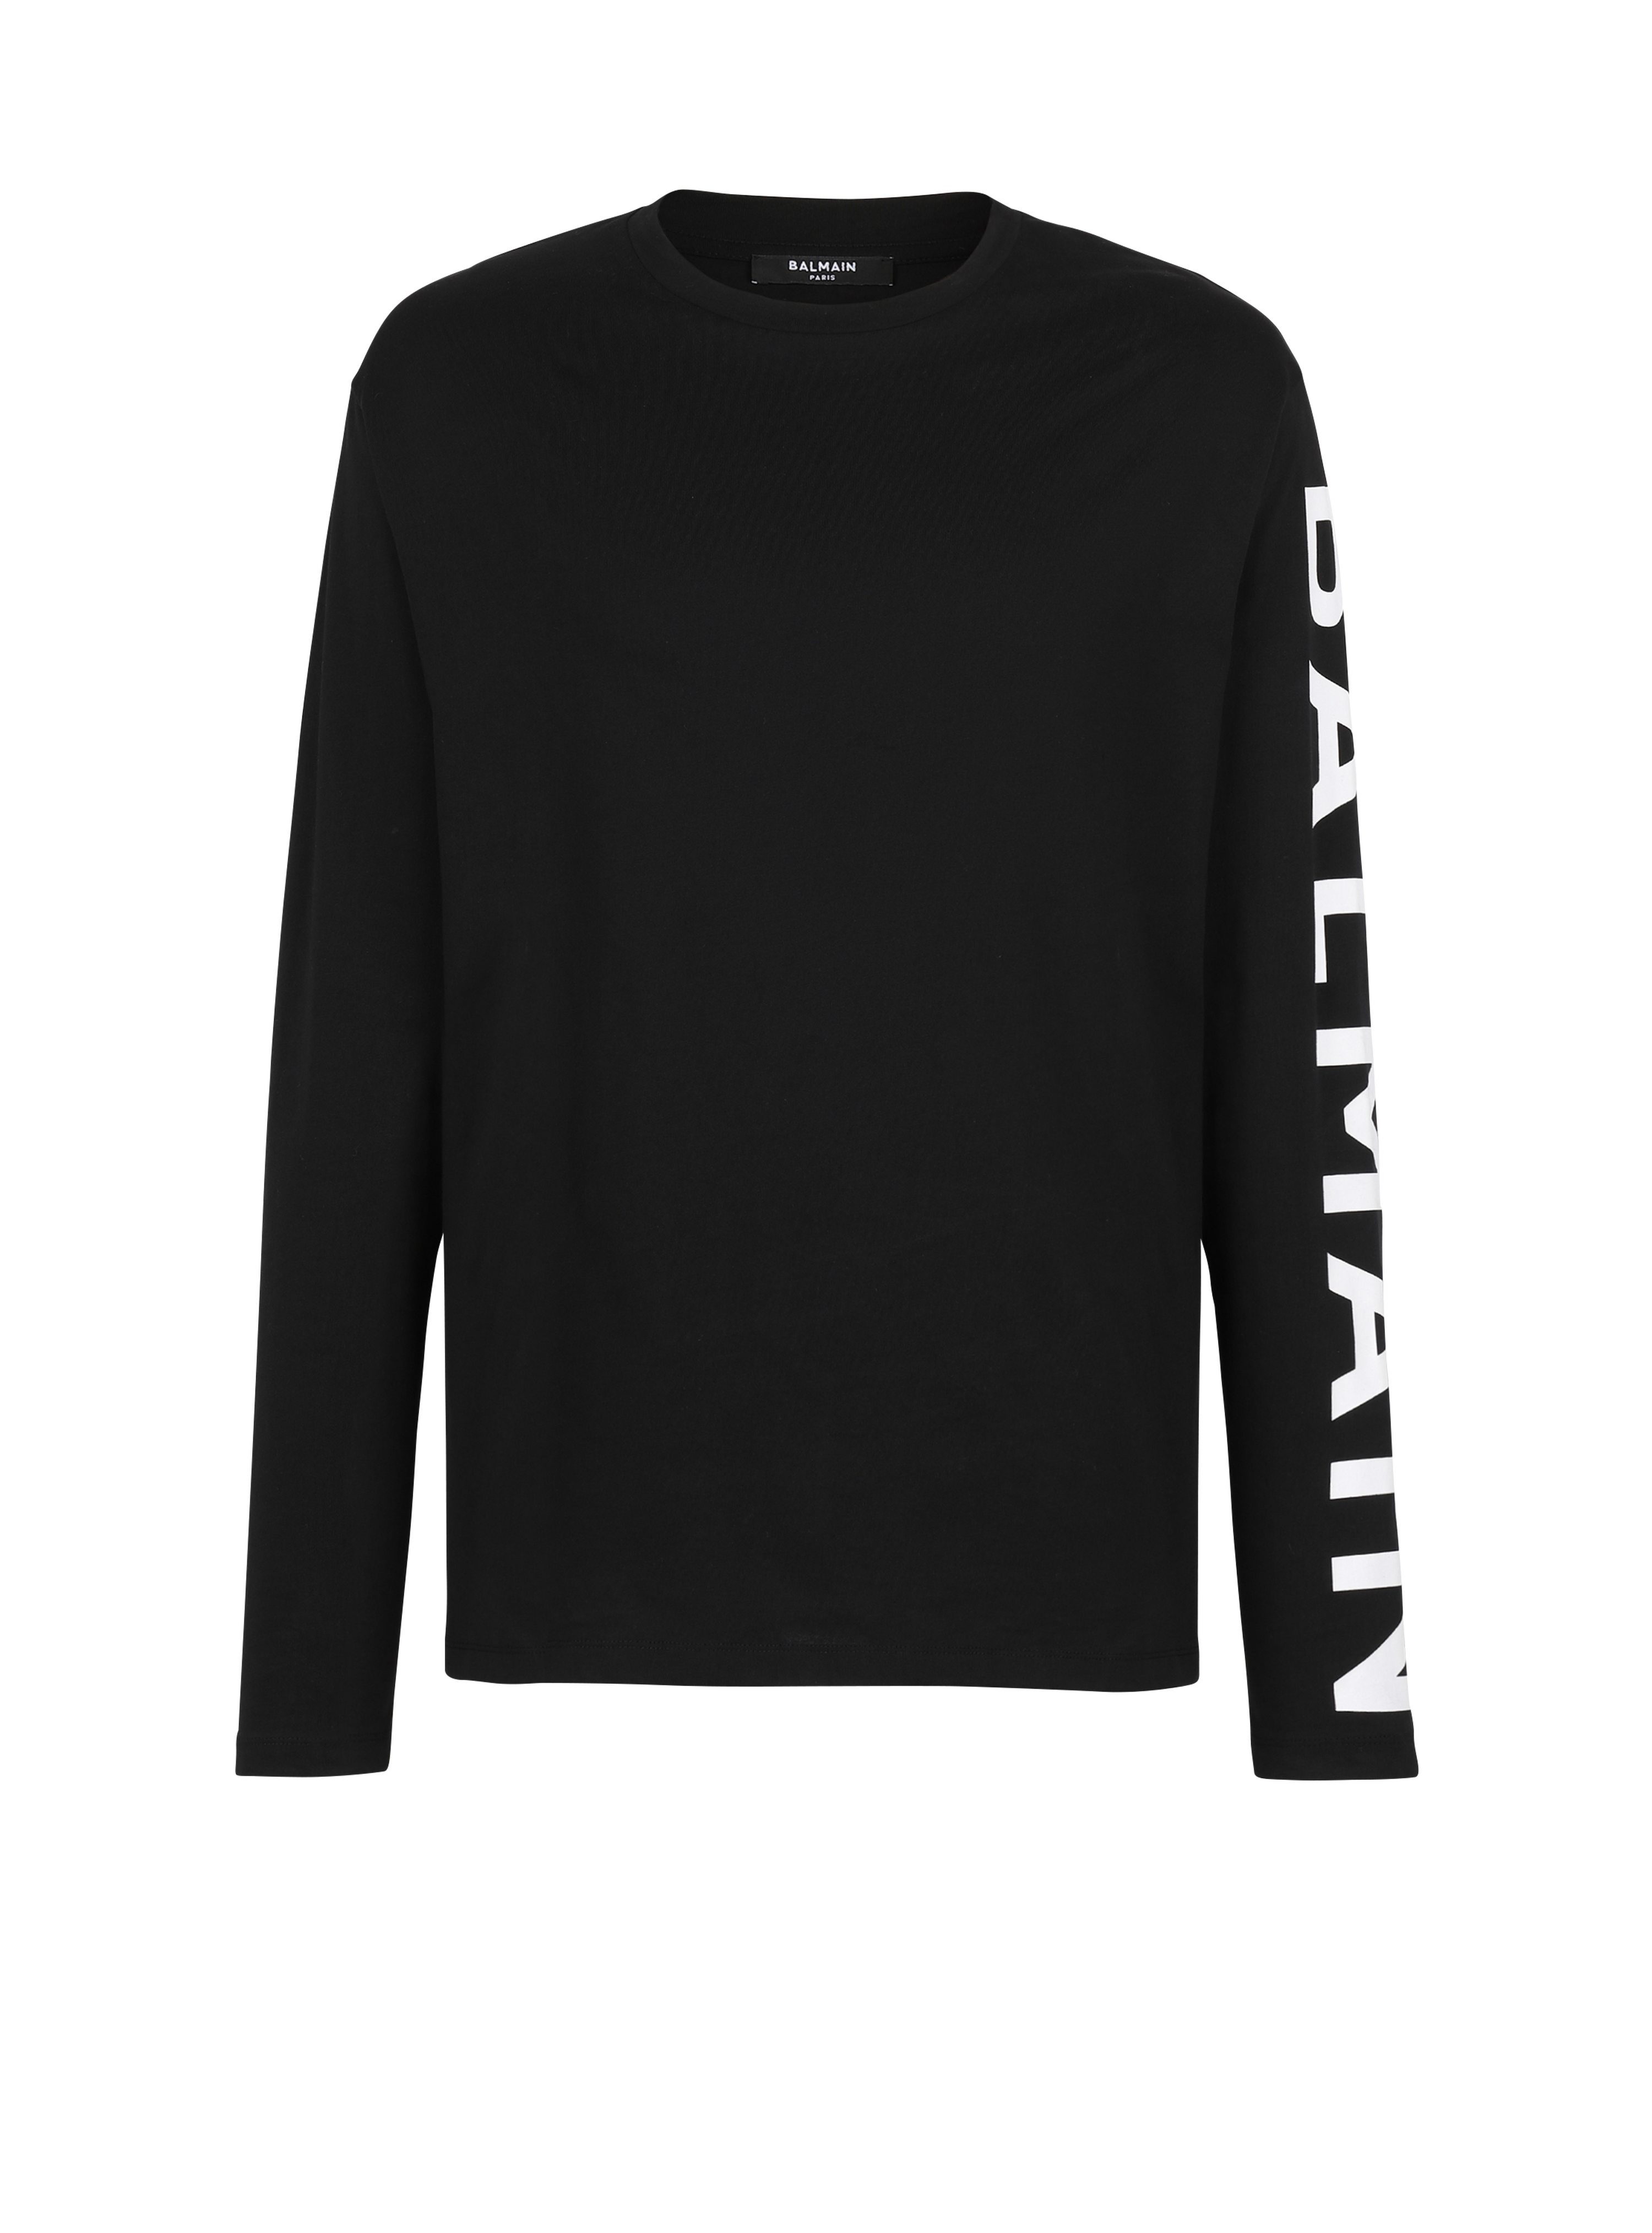 Langärmliges T-Shirt aus Baumwolle mit Balmain-Logo am Ärmel, schwarz